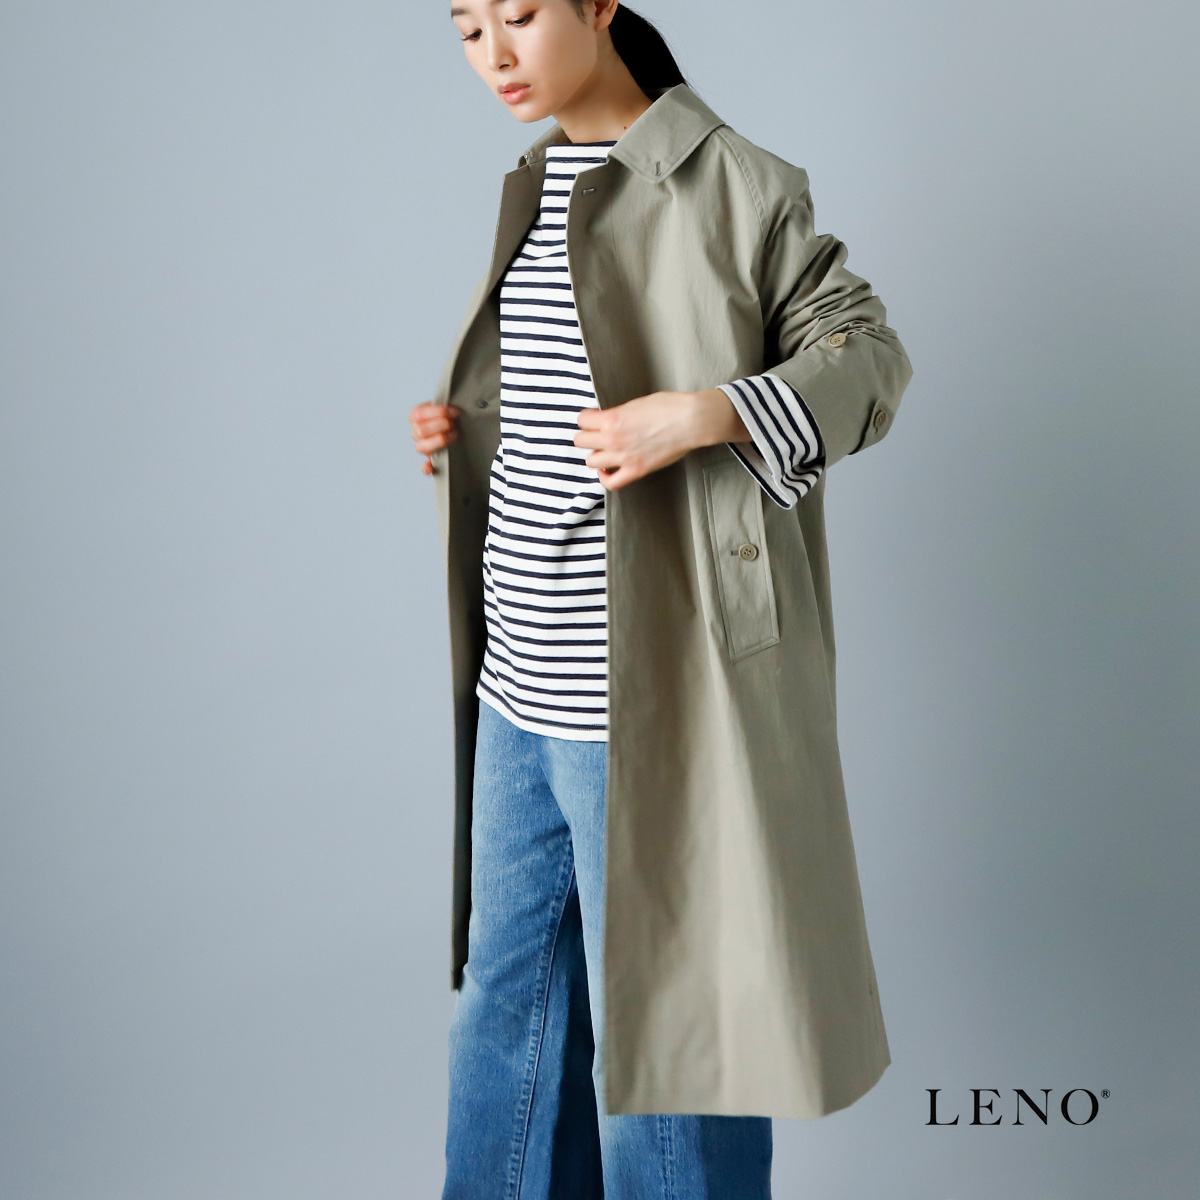 LENO(リノ)オリジナルNCオックス バルカラーコート h2201-co001